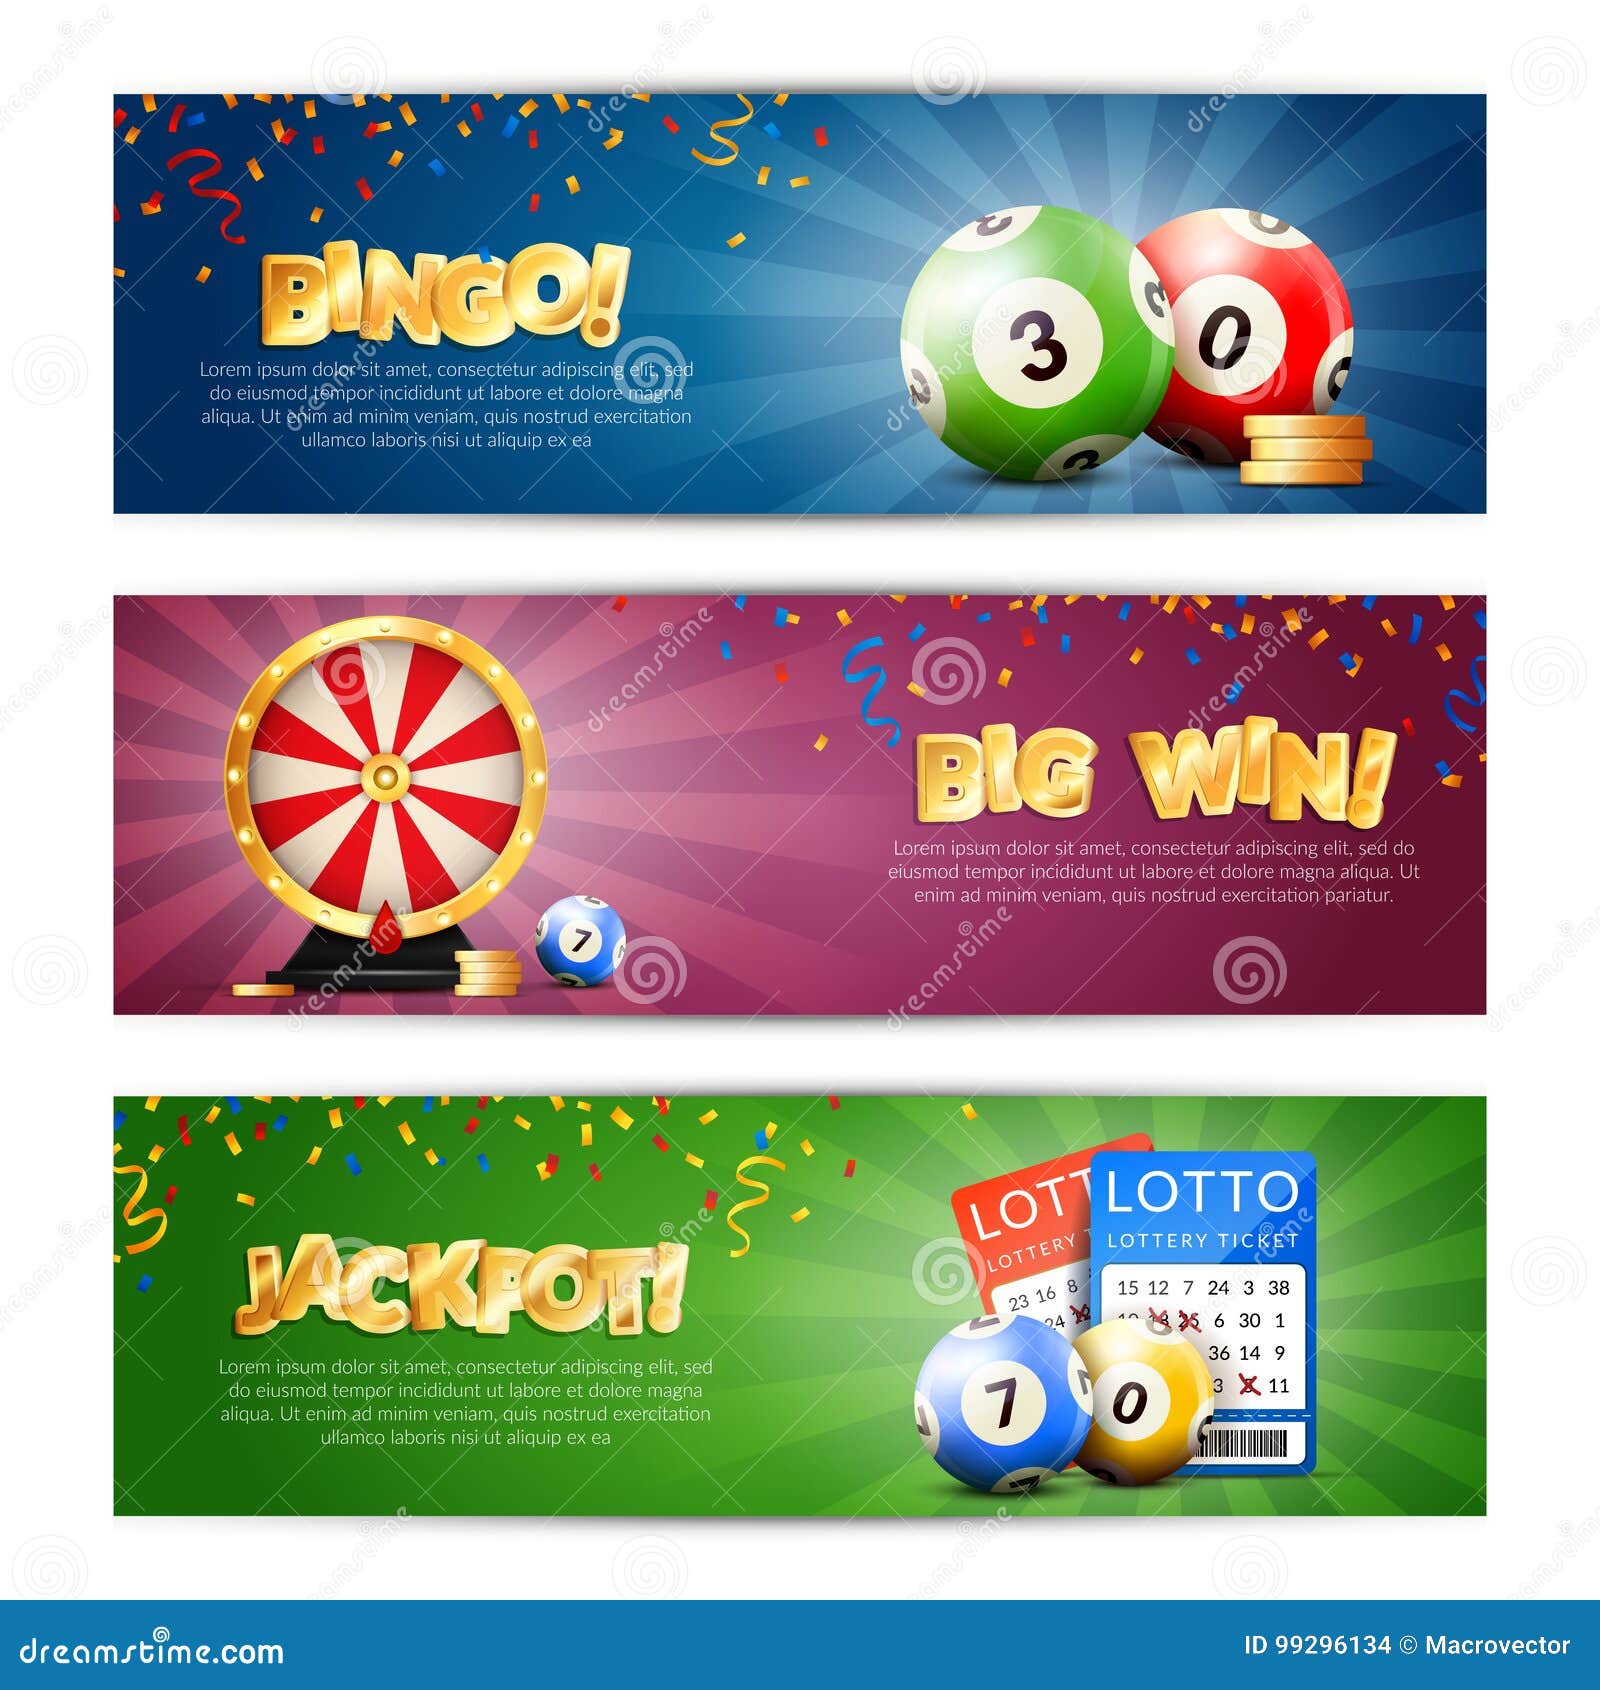 lottery jackpot banners set